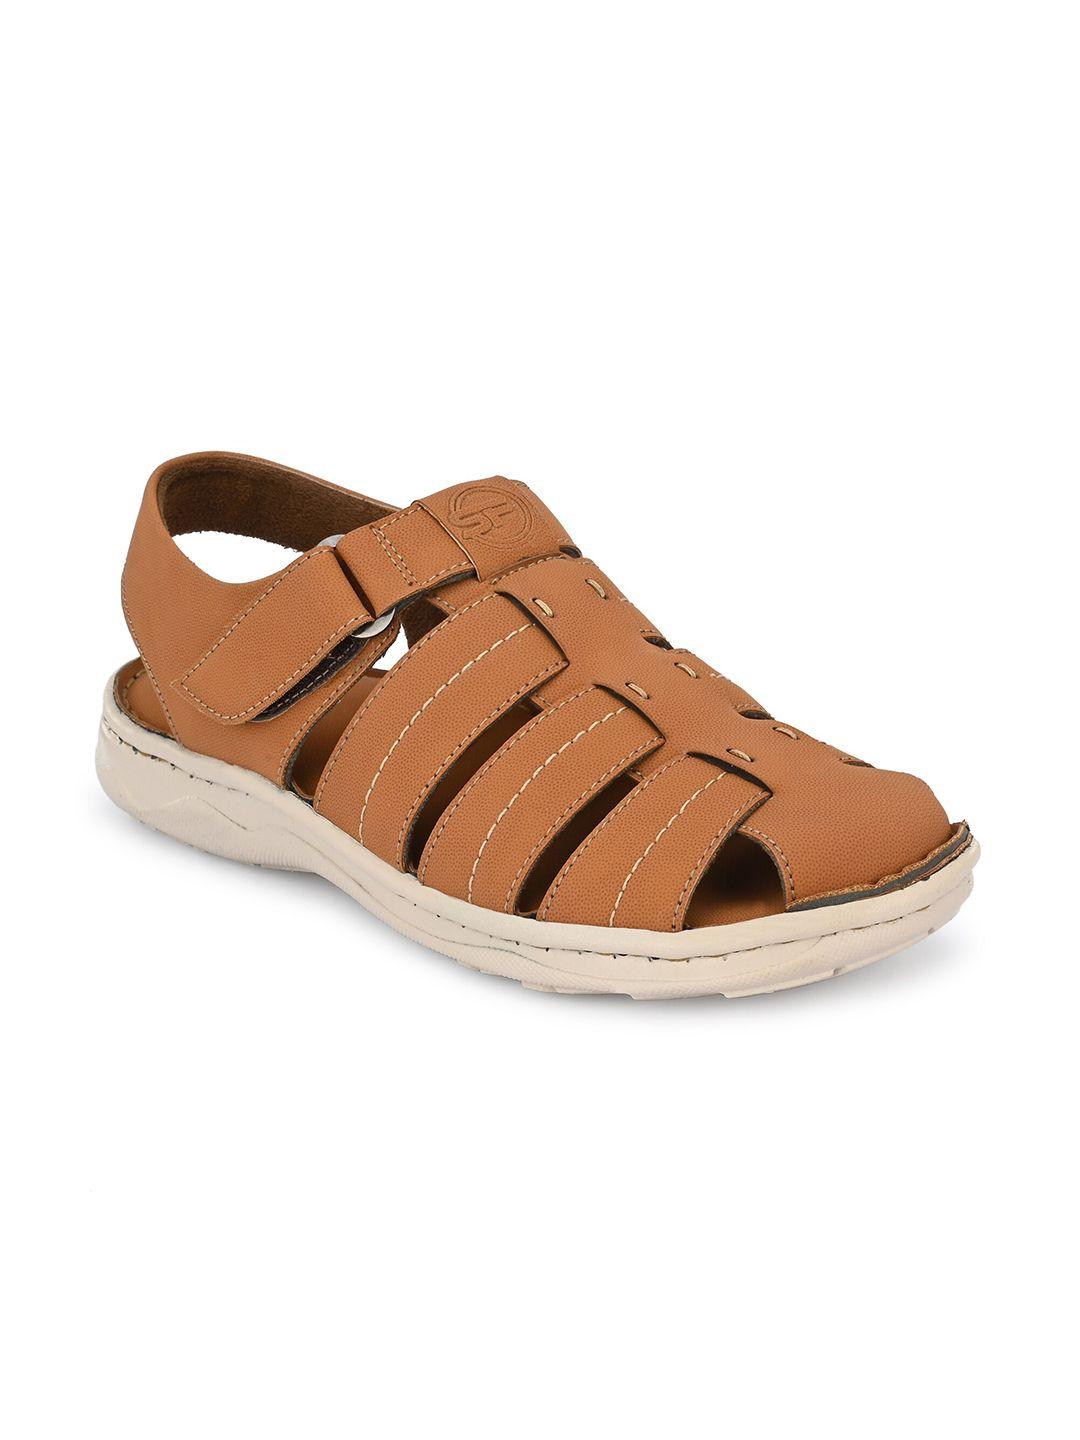 softio-men-beige-comfort-sandals